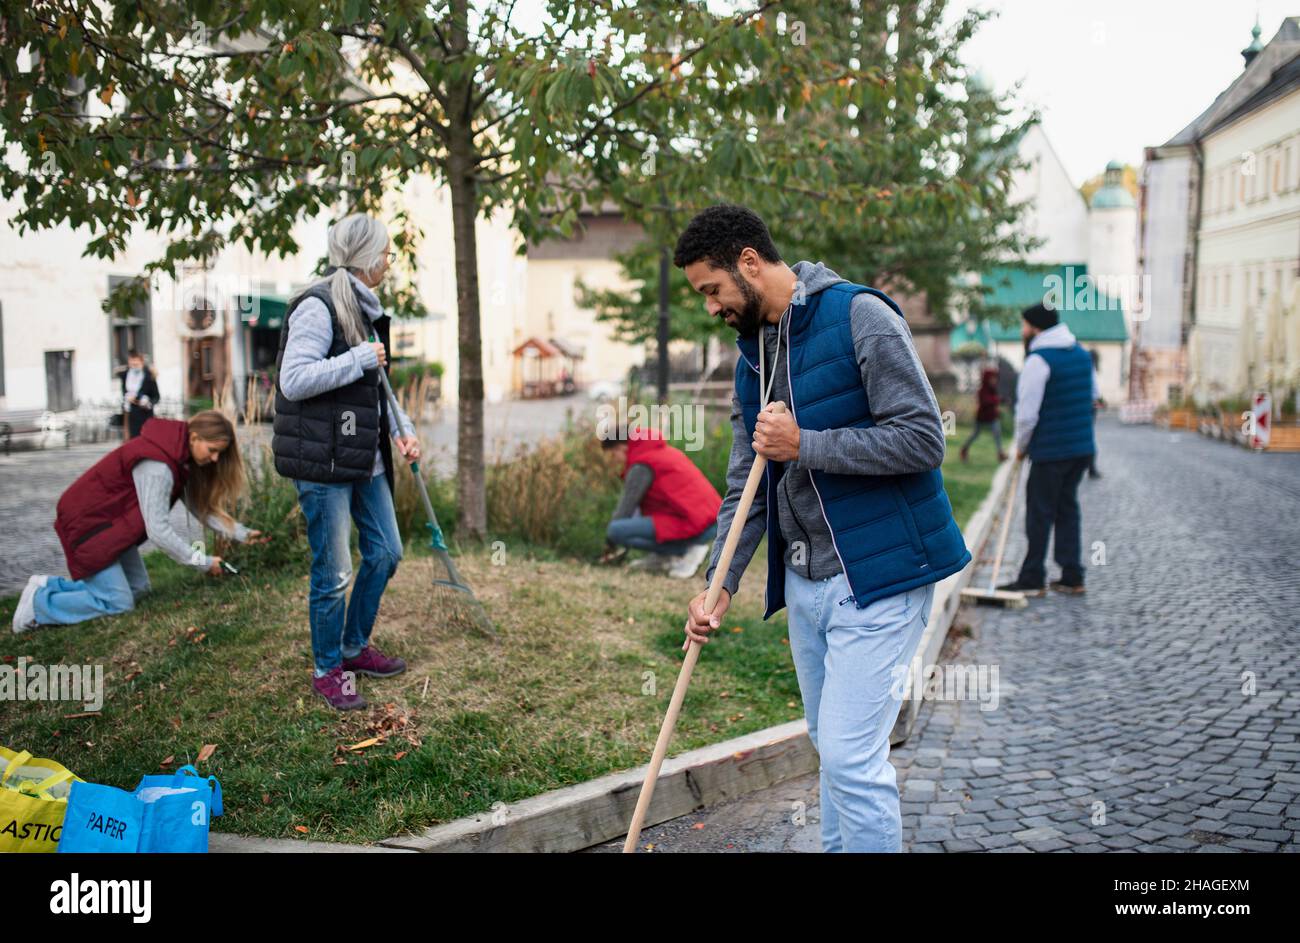 Jeune homme bénévole avec l'équipe de nettoyage de la rue, concept de service communautaire Banque D'Images